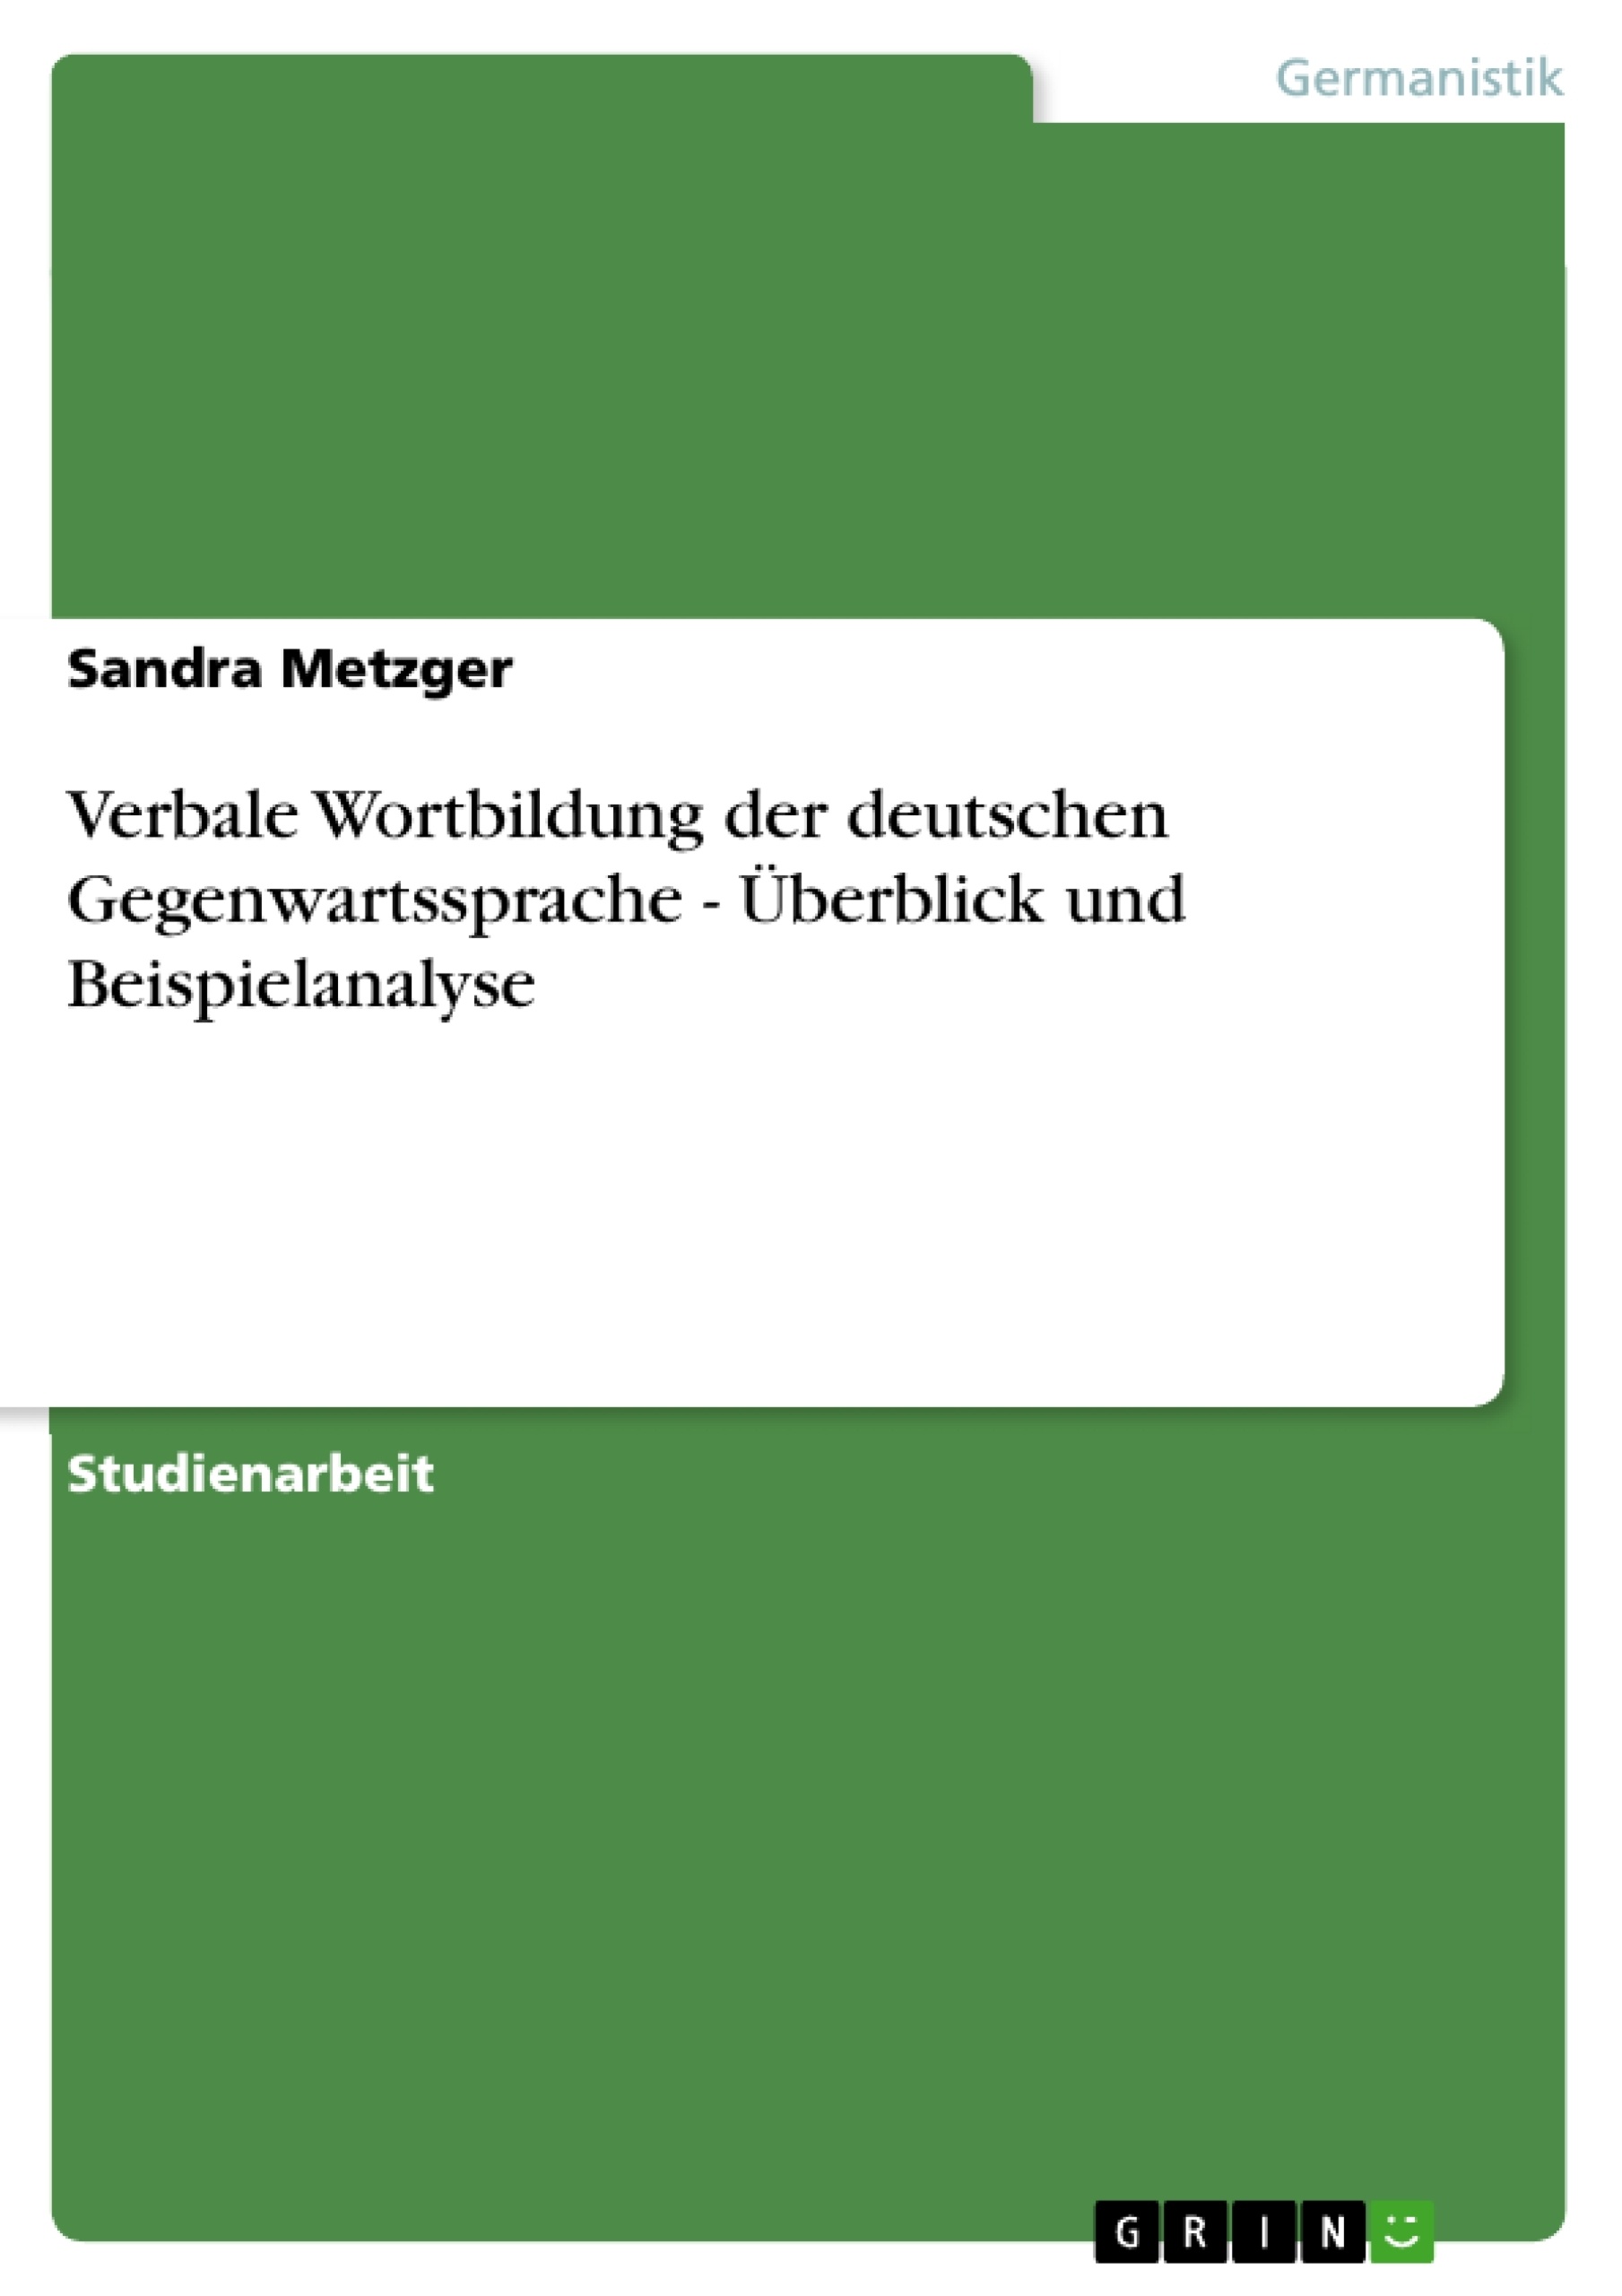 Titel: Verbale Wortbildung der deutschen Gegenwartssprache - Überblick und Beispielanalyse